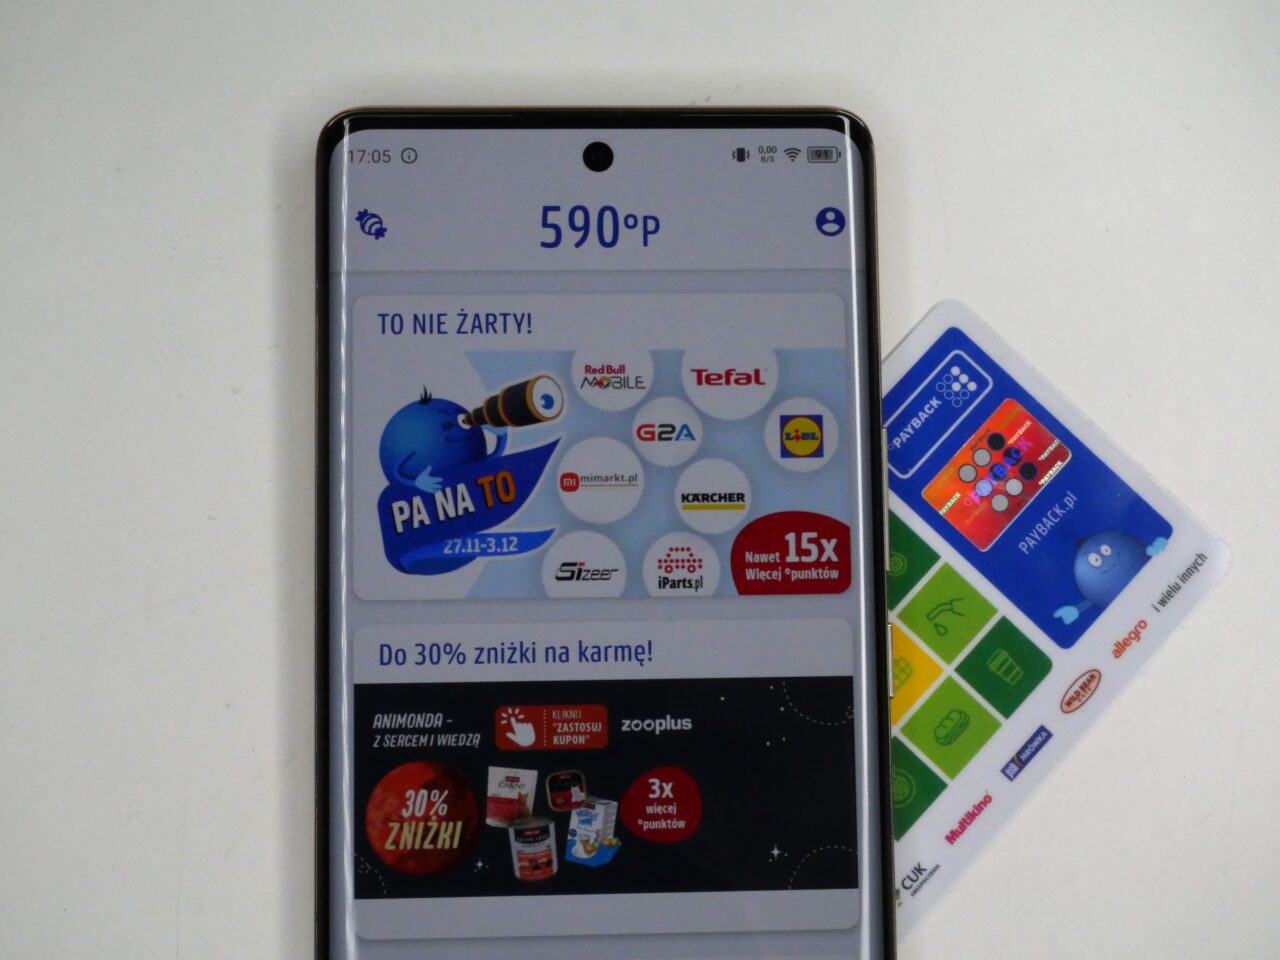 Smartfon wyświetlający ekran aplikacji z ofertami i punktami lojalnościowymi, leżący obok karty lojalnościowych.